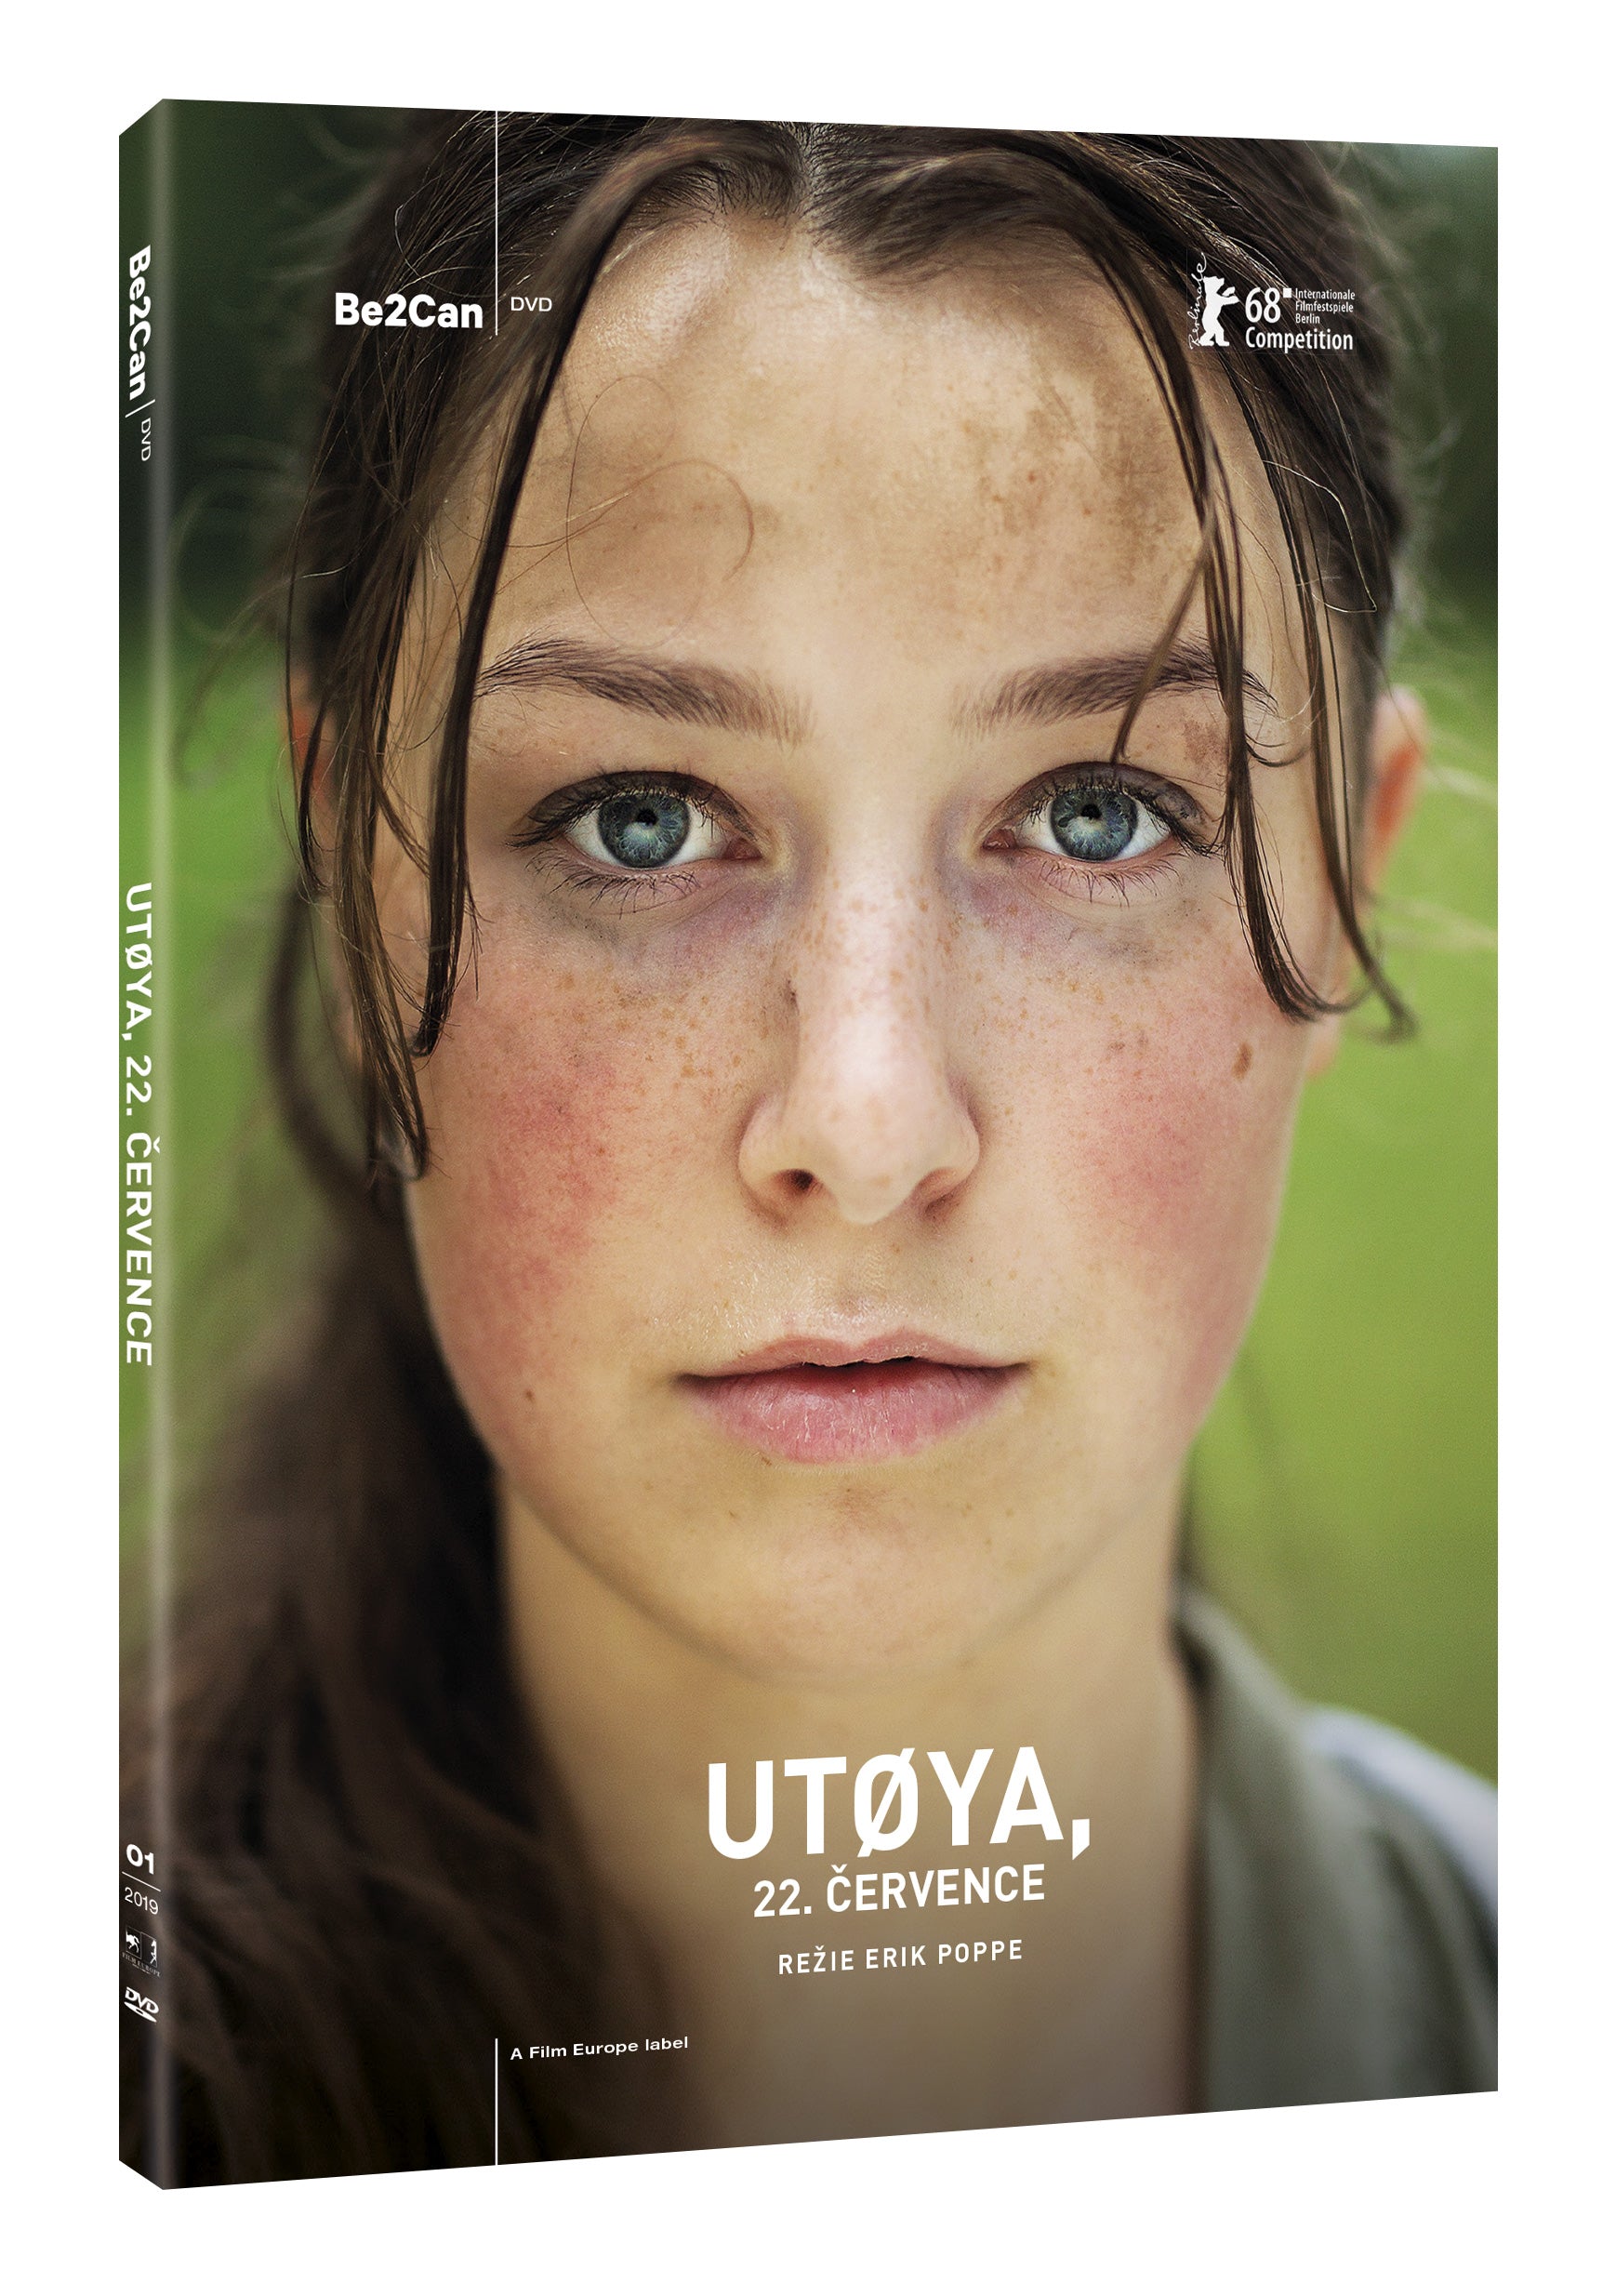 Utøya, 22. cervence DVD / U 22-july